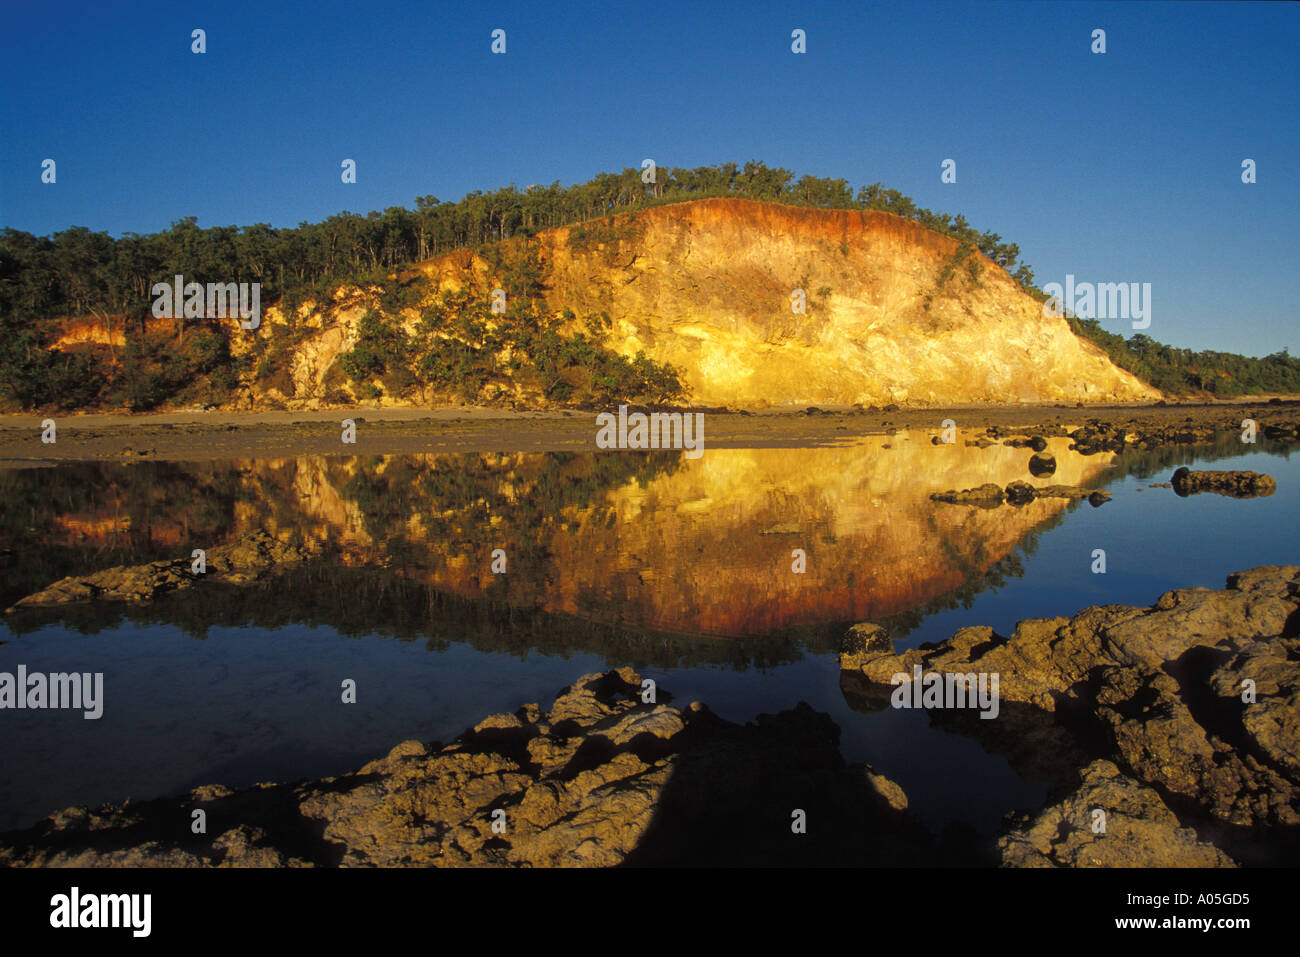 Sonnenaufgang am inländischen Klippen im See gesehen von den Aborigines als Riesenfisch Mythos, Nhulunbuy Northern Territory Australien widerspiegelt Stockfoto